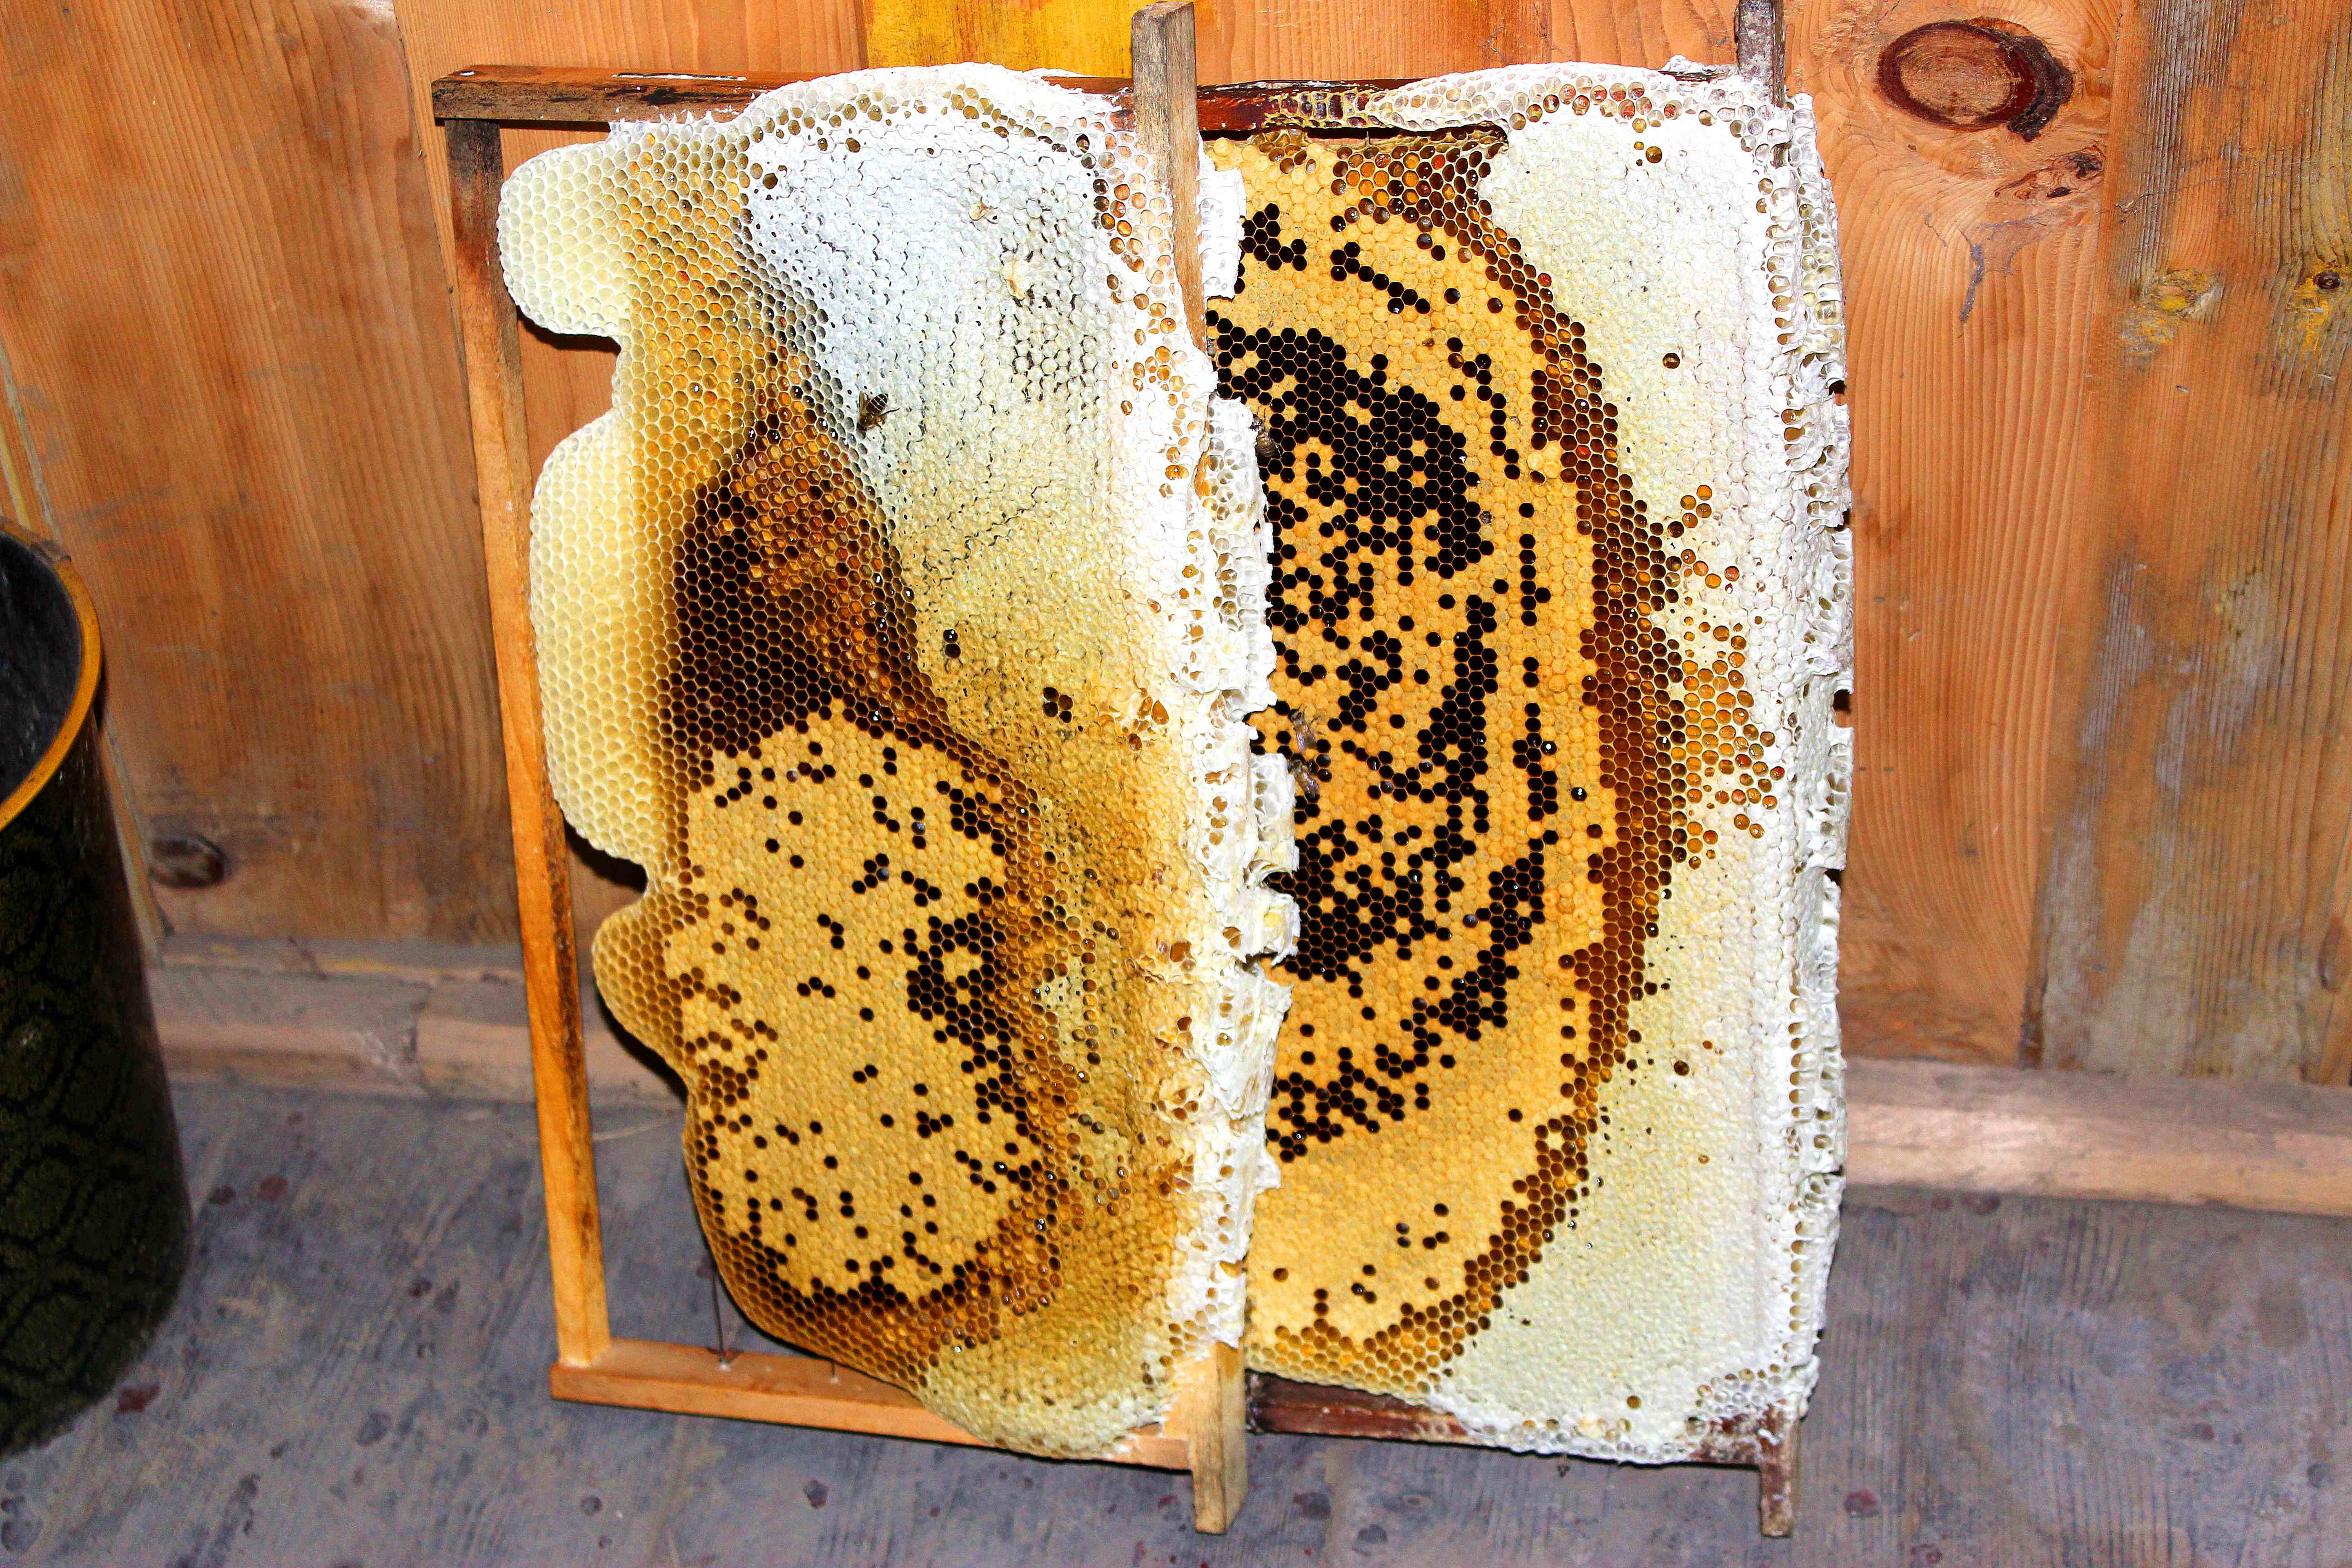 我来自羌山高浓度山花蜜我来自羌山高浓度山花蜜 蜂蜜的作用 蜂蜜面膜 蜂蜜的作用和效果 花蜂蜜 山花蜜 蜂蜜